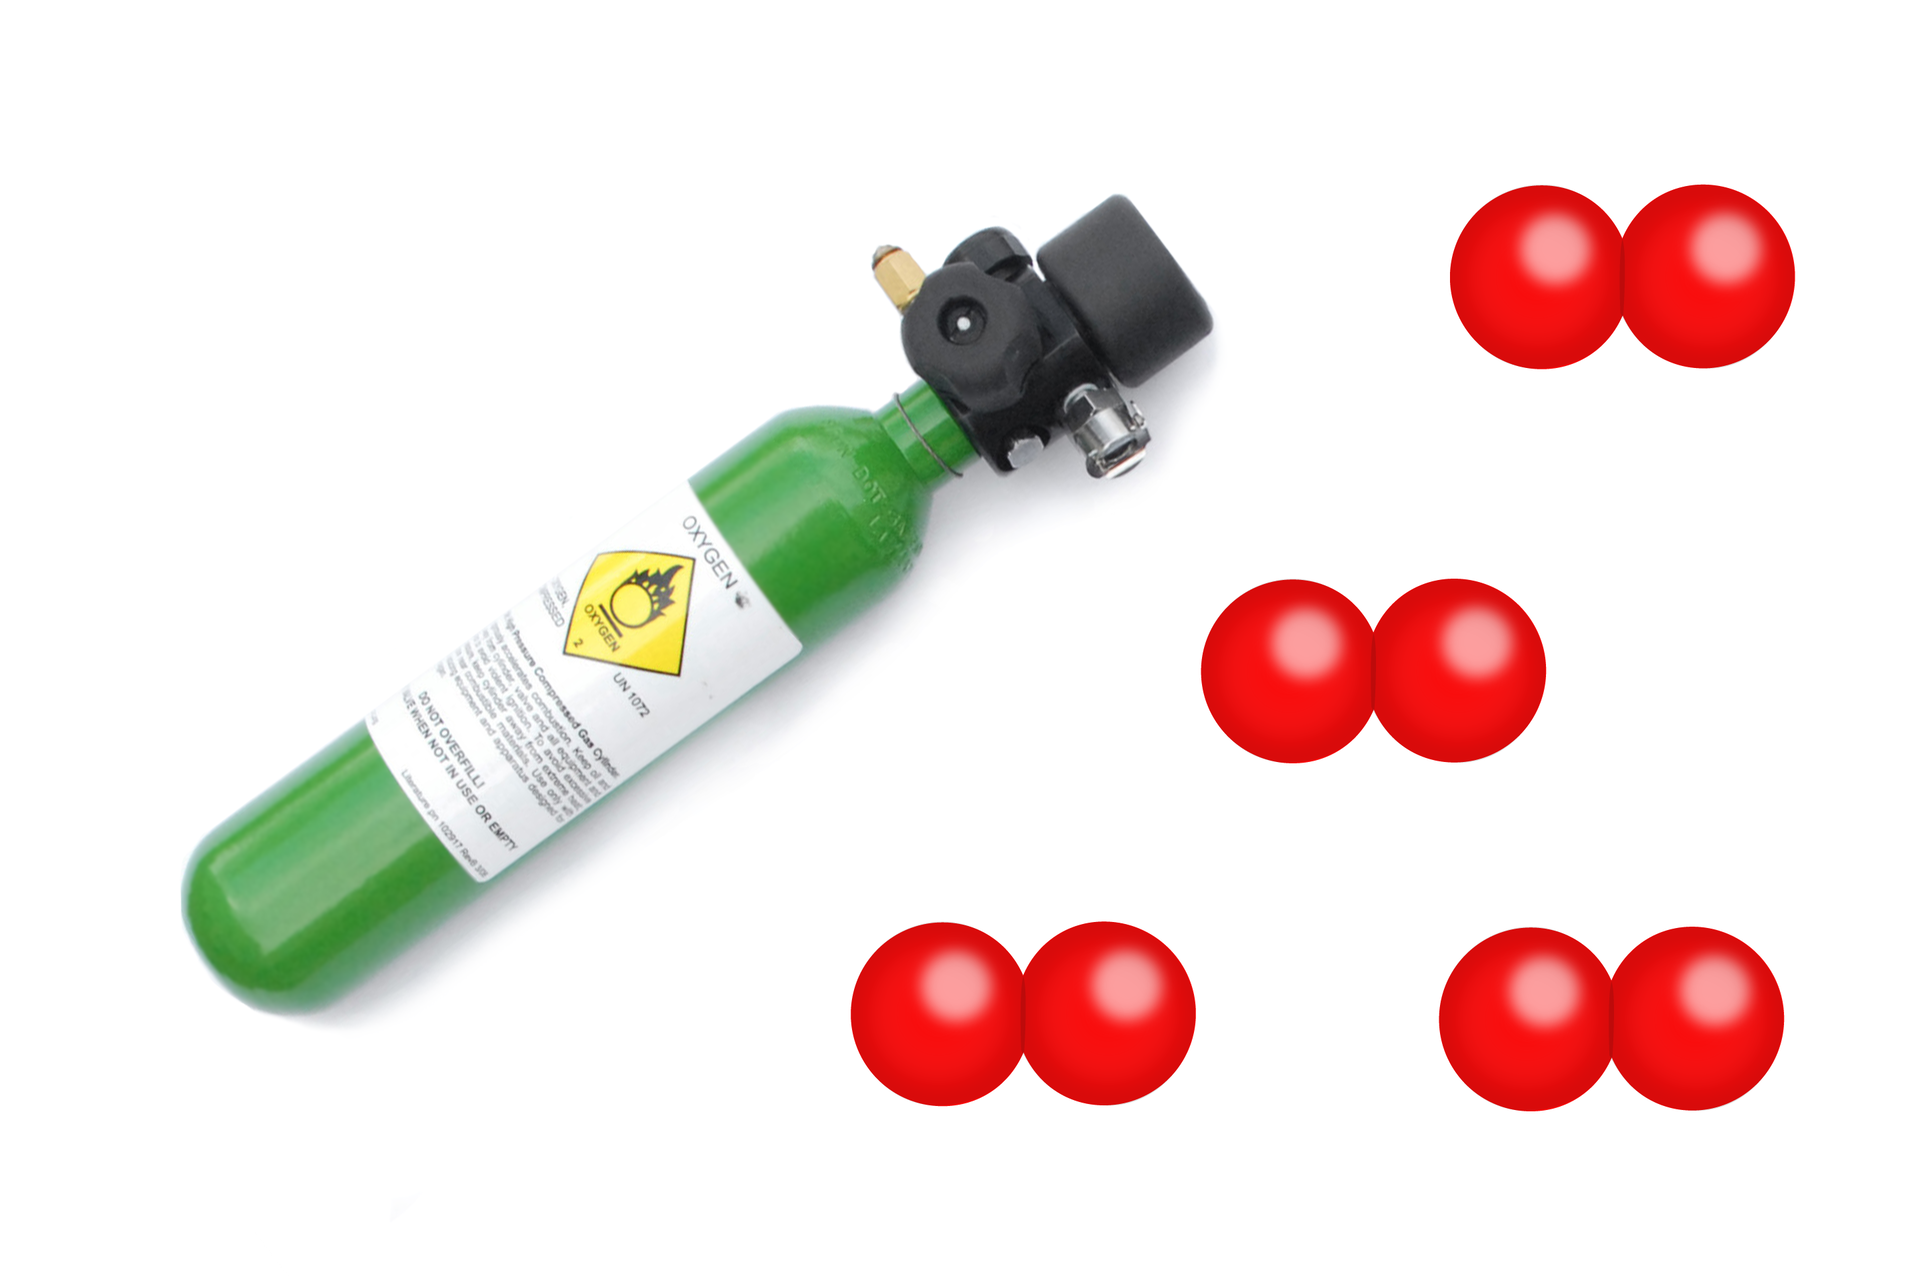 Trzecia ilustracja przedstawia butlę z tlenem oraz model cząsteczki tlenu. Tworzą go dwie czerwone kulki połączone ze sobą.